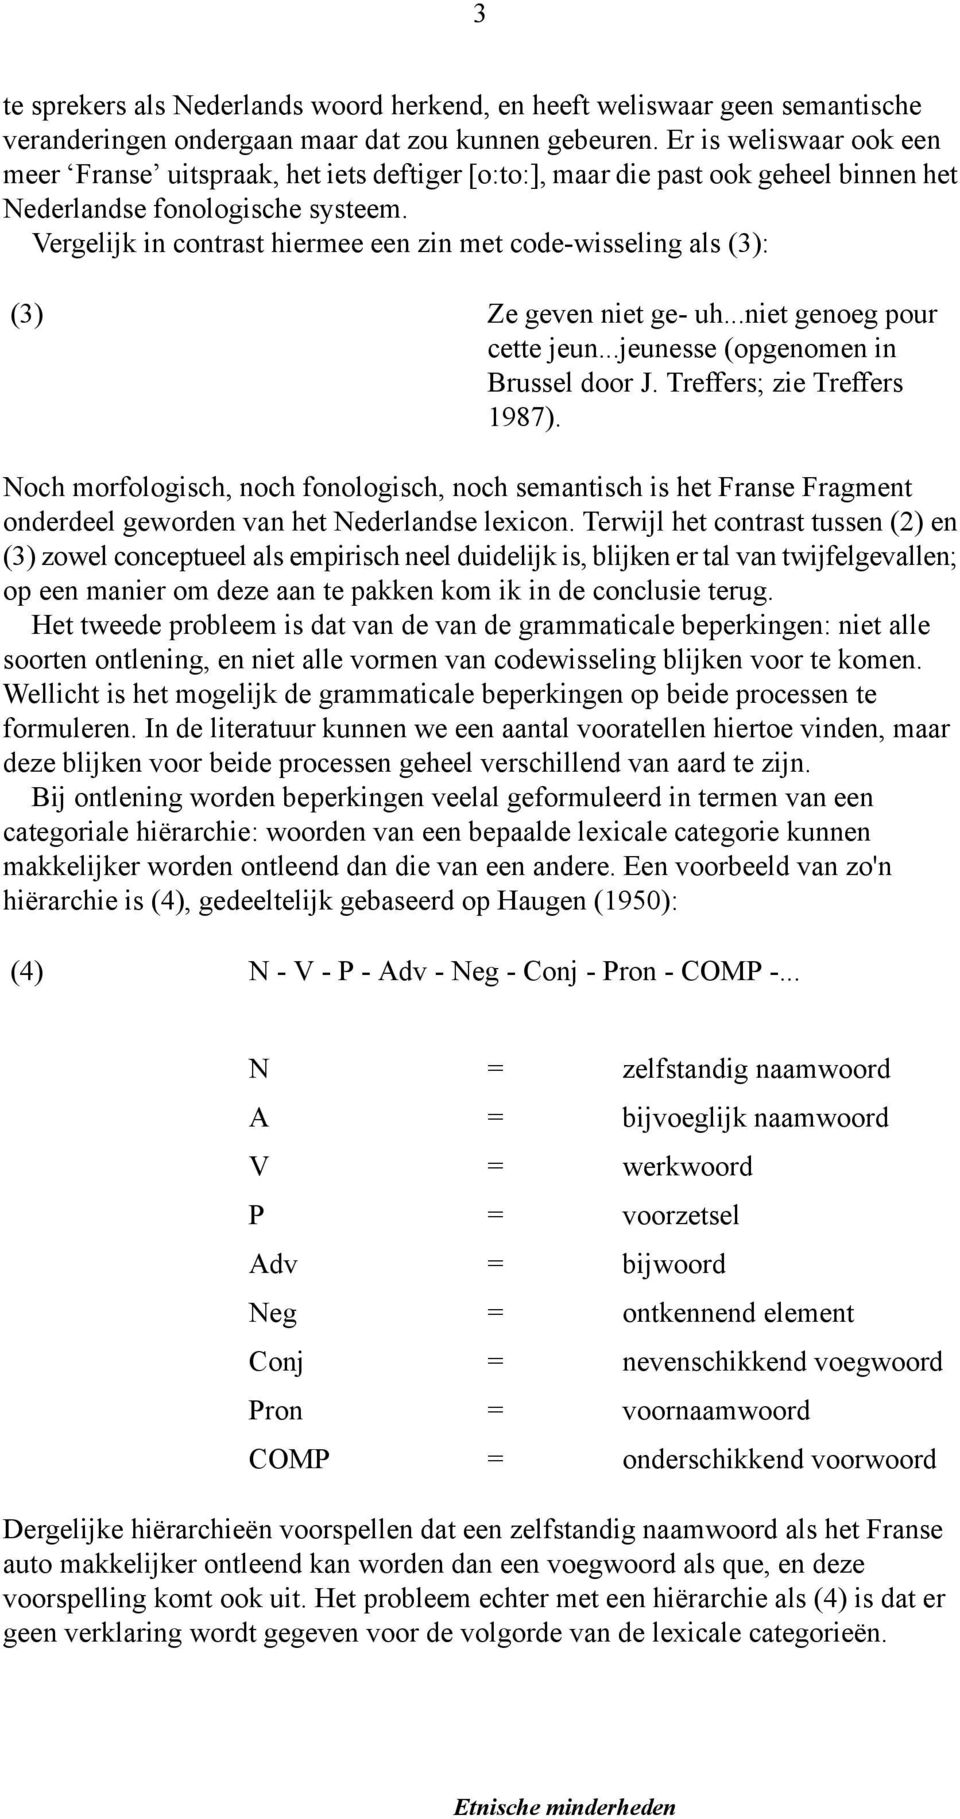 Vergelijk in contrast hiermee een zin met code-wisseling als (3): (3) Ze geven niet ge- uh...niet genoeg pour cette jeun...jeunesse (opgenomen in Brussel door J. Treffers; zie Treffers 1987).